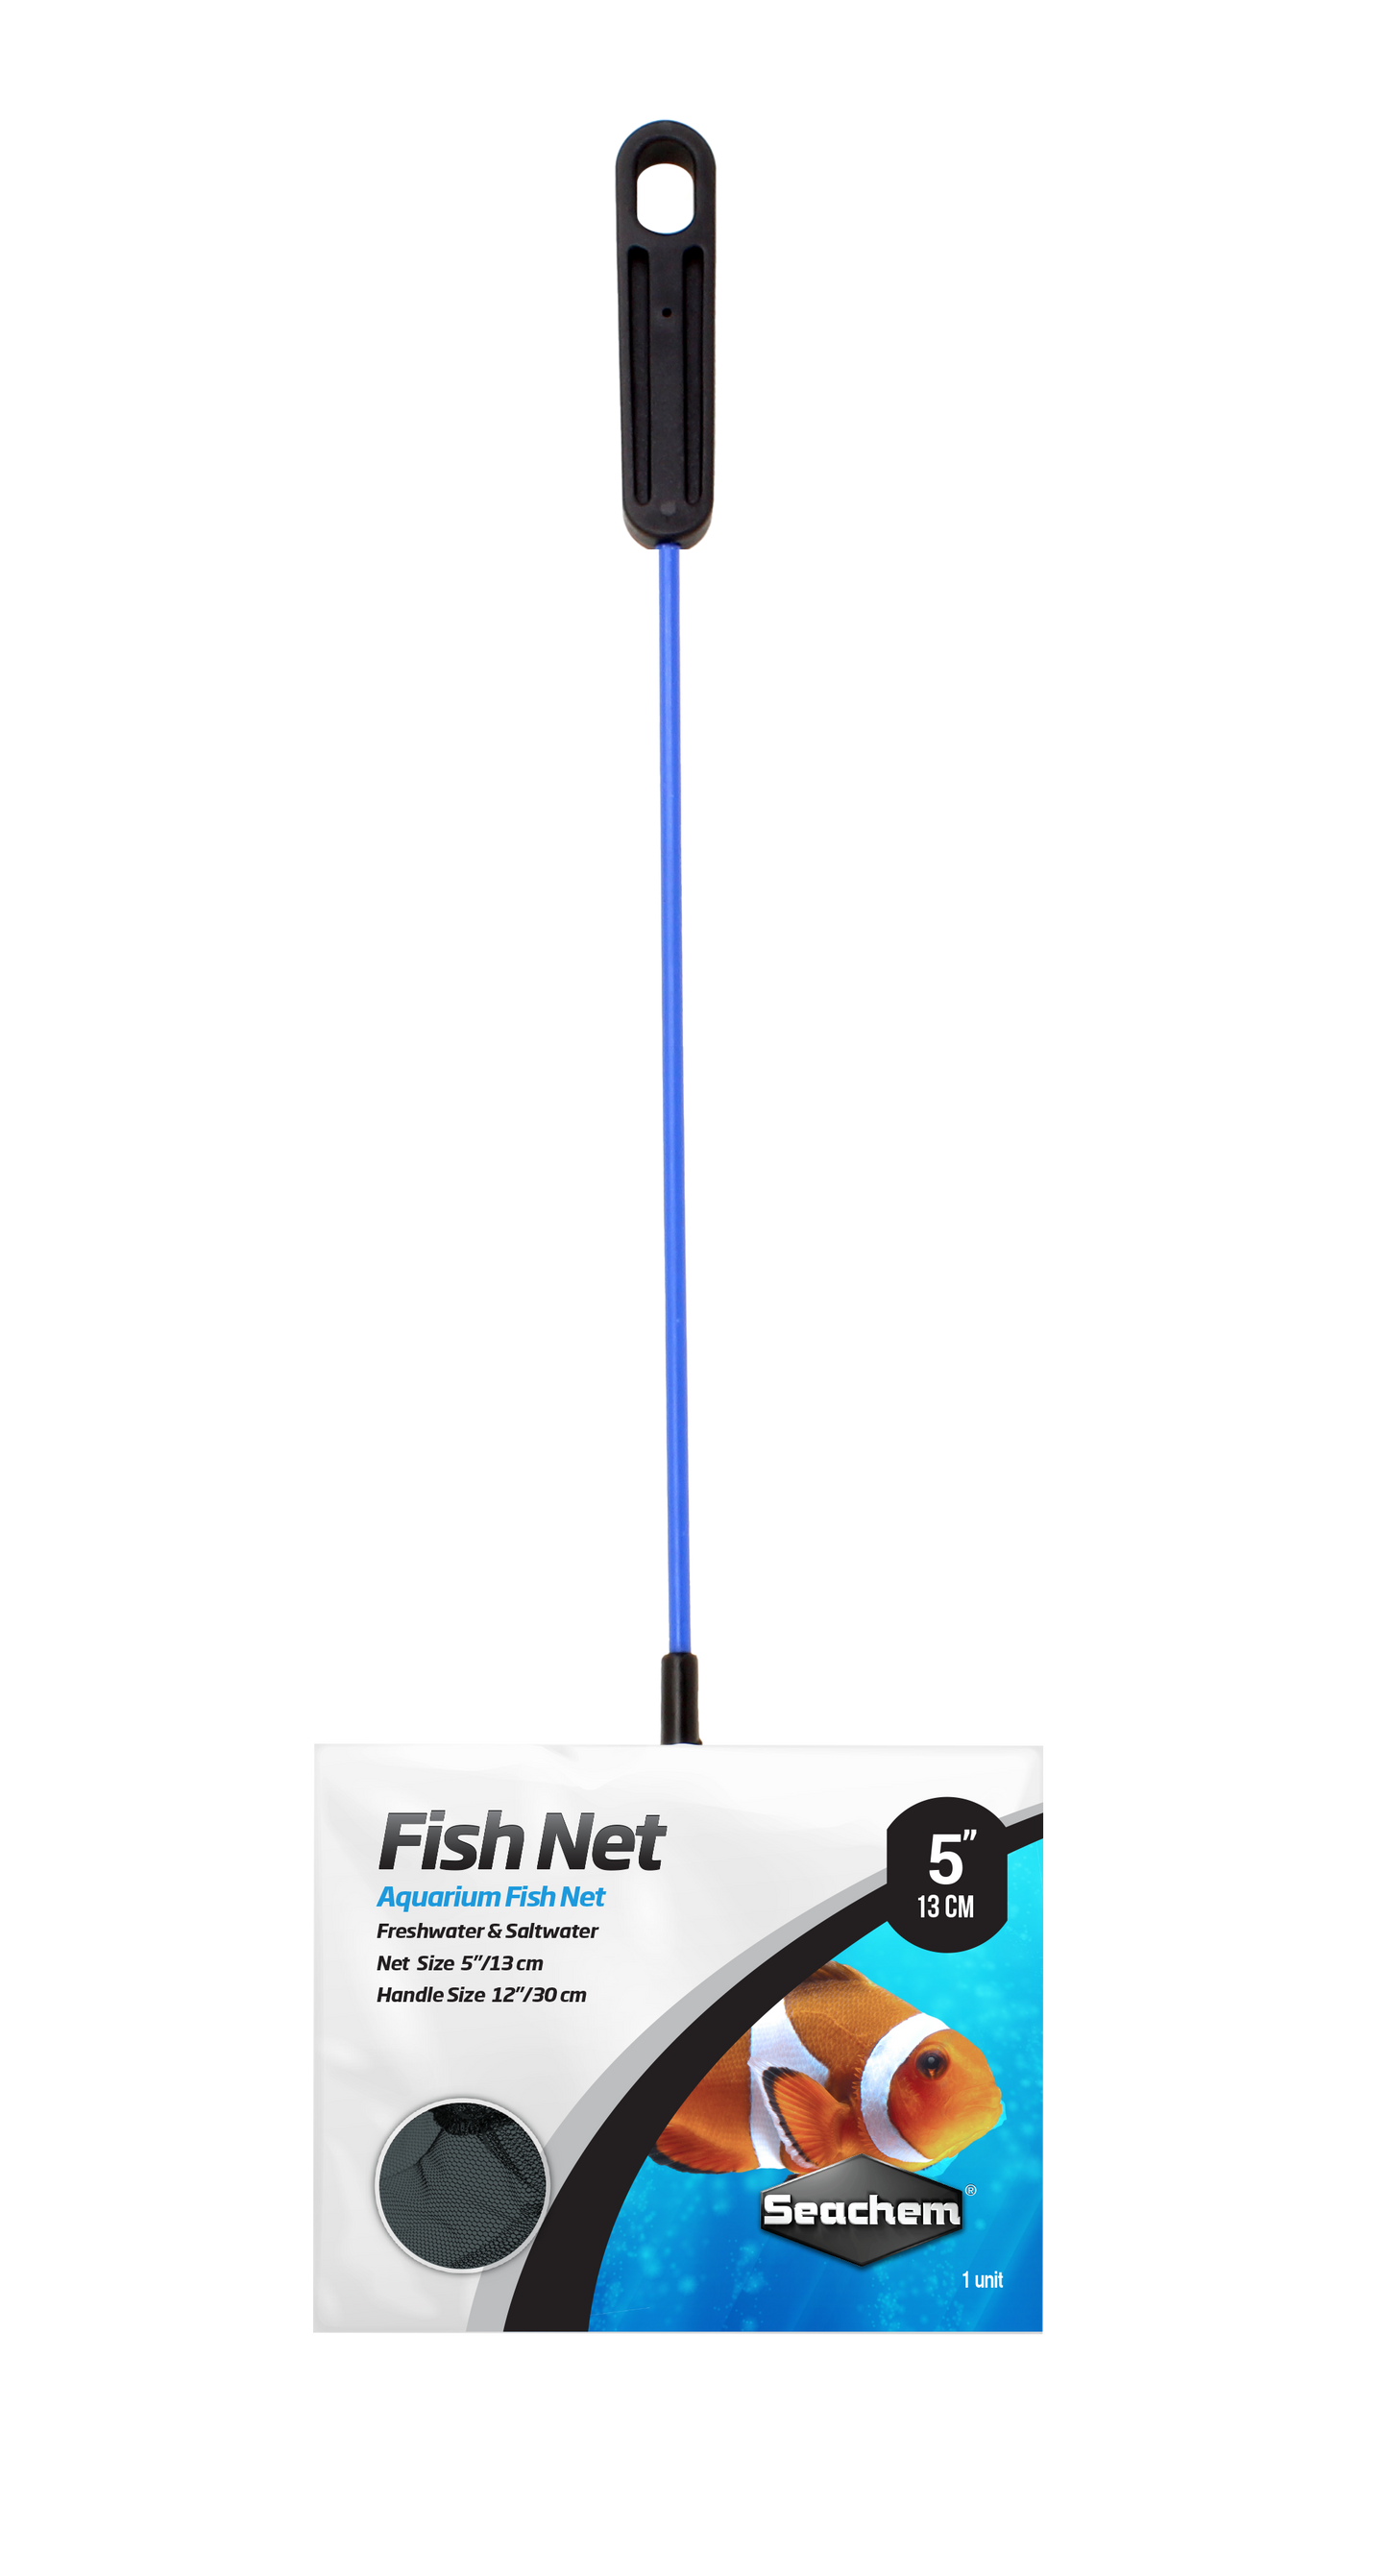 Seachem Fish Net